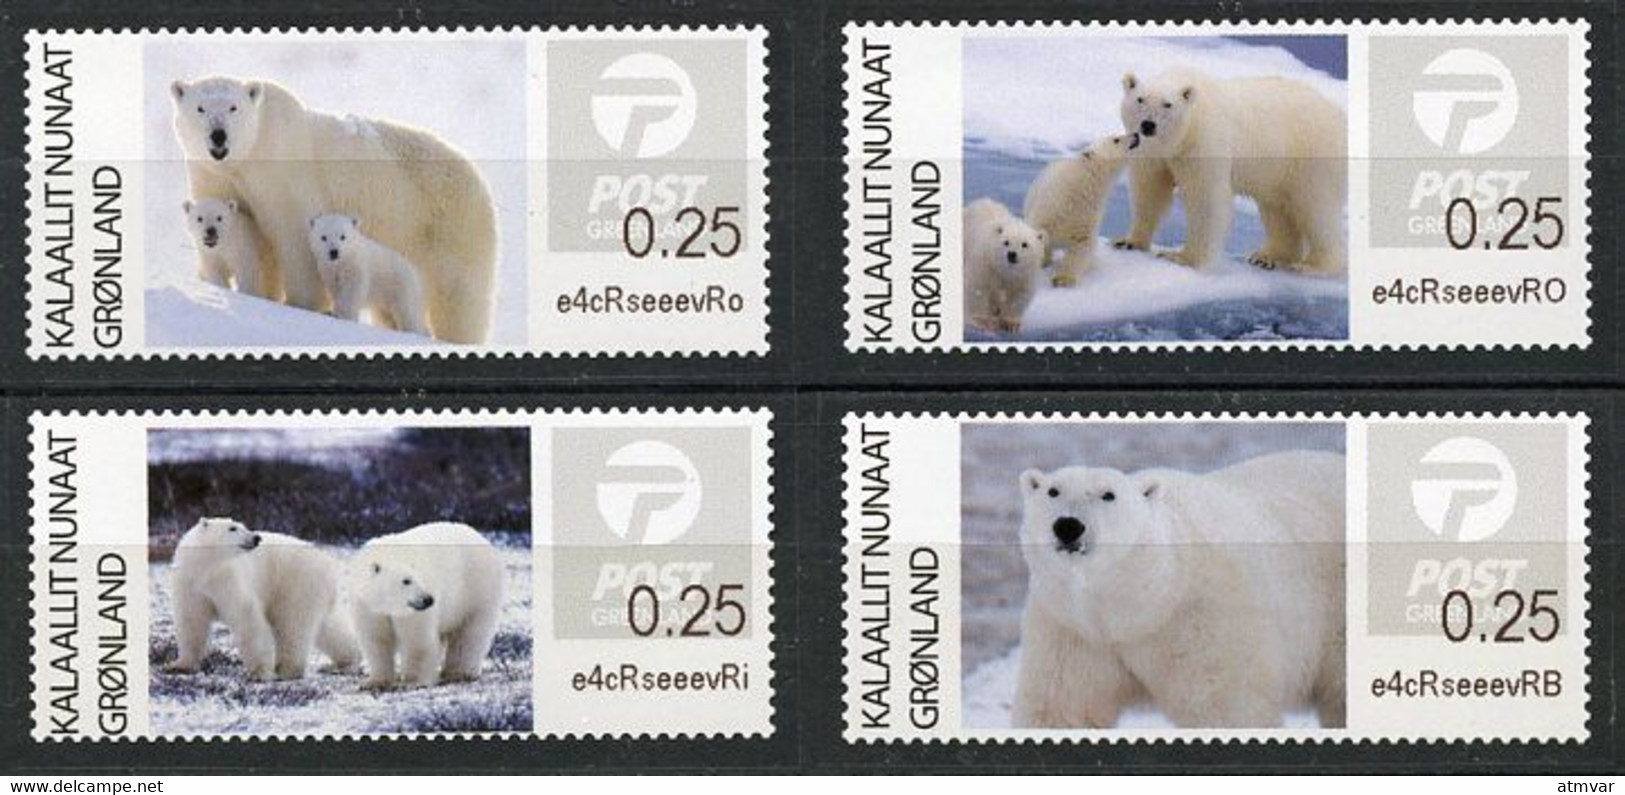 GREENLAND GROENLAND (2019) - ATM Series - Polar Bears, Der Eisbär, Ours Blanc, Oso Polar (Ursus Thalarctos Maritimus) - Automatenmarken